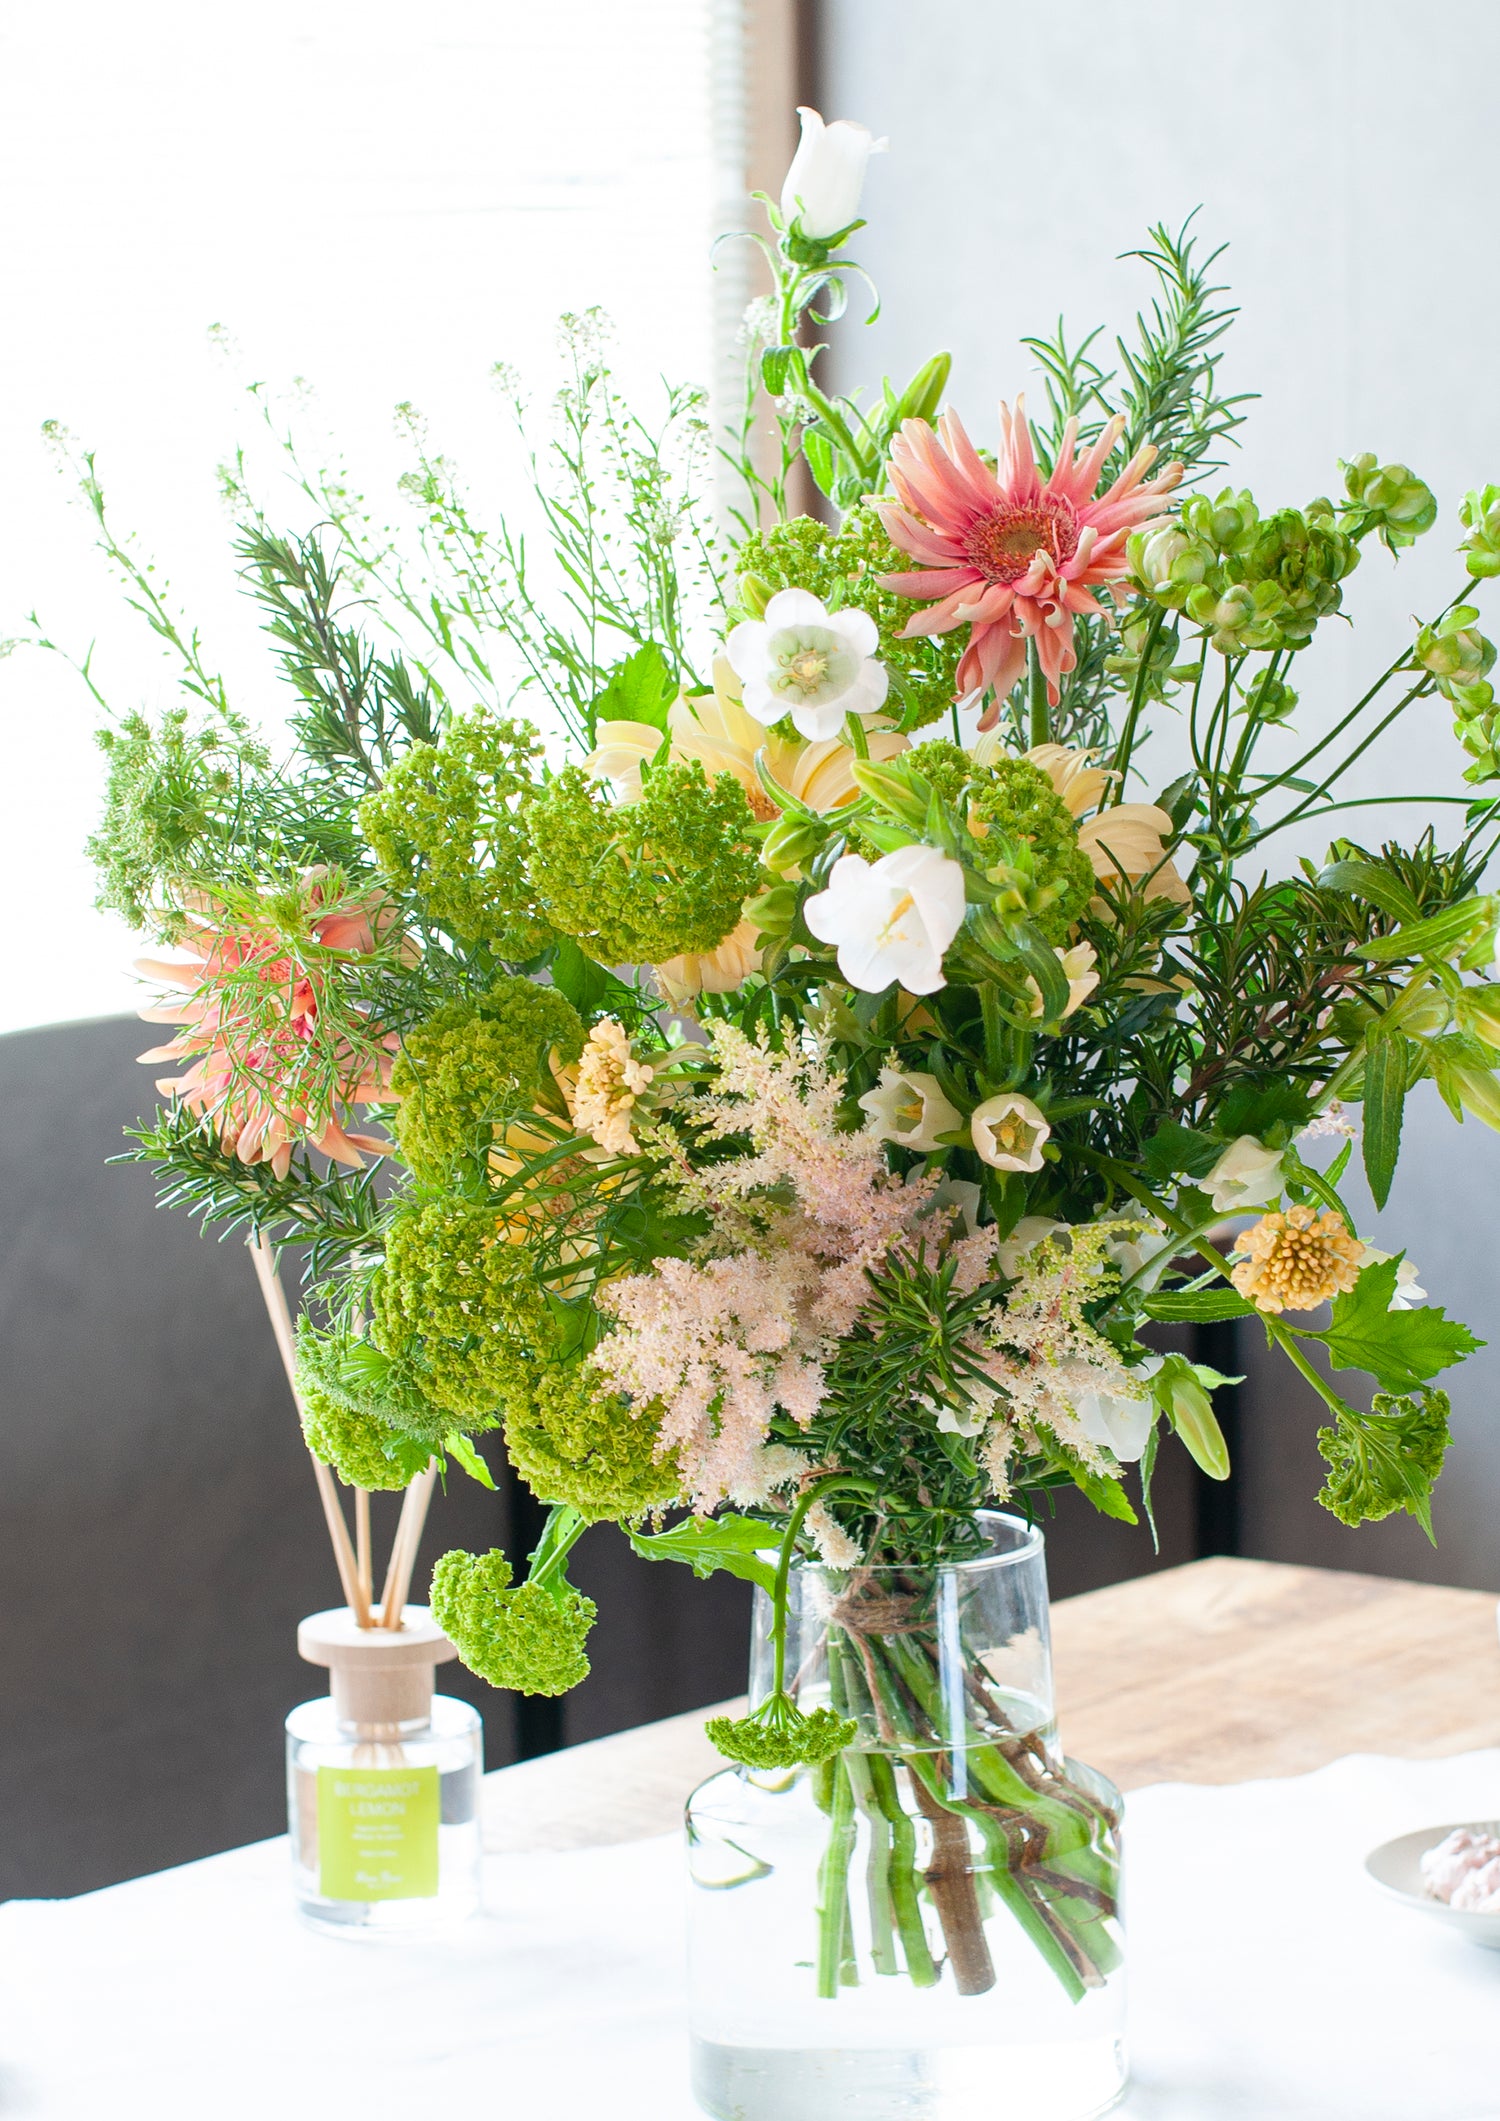 誕生日や結婚記念日に 期間限定 ガーベラを使った季節の花束「vert crème」